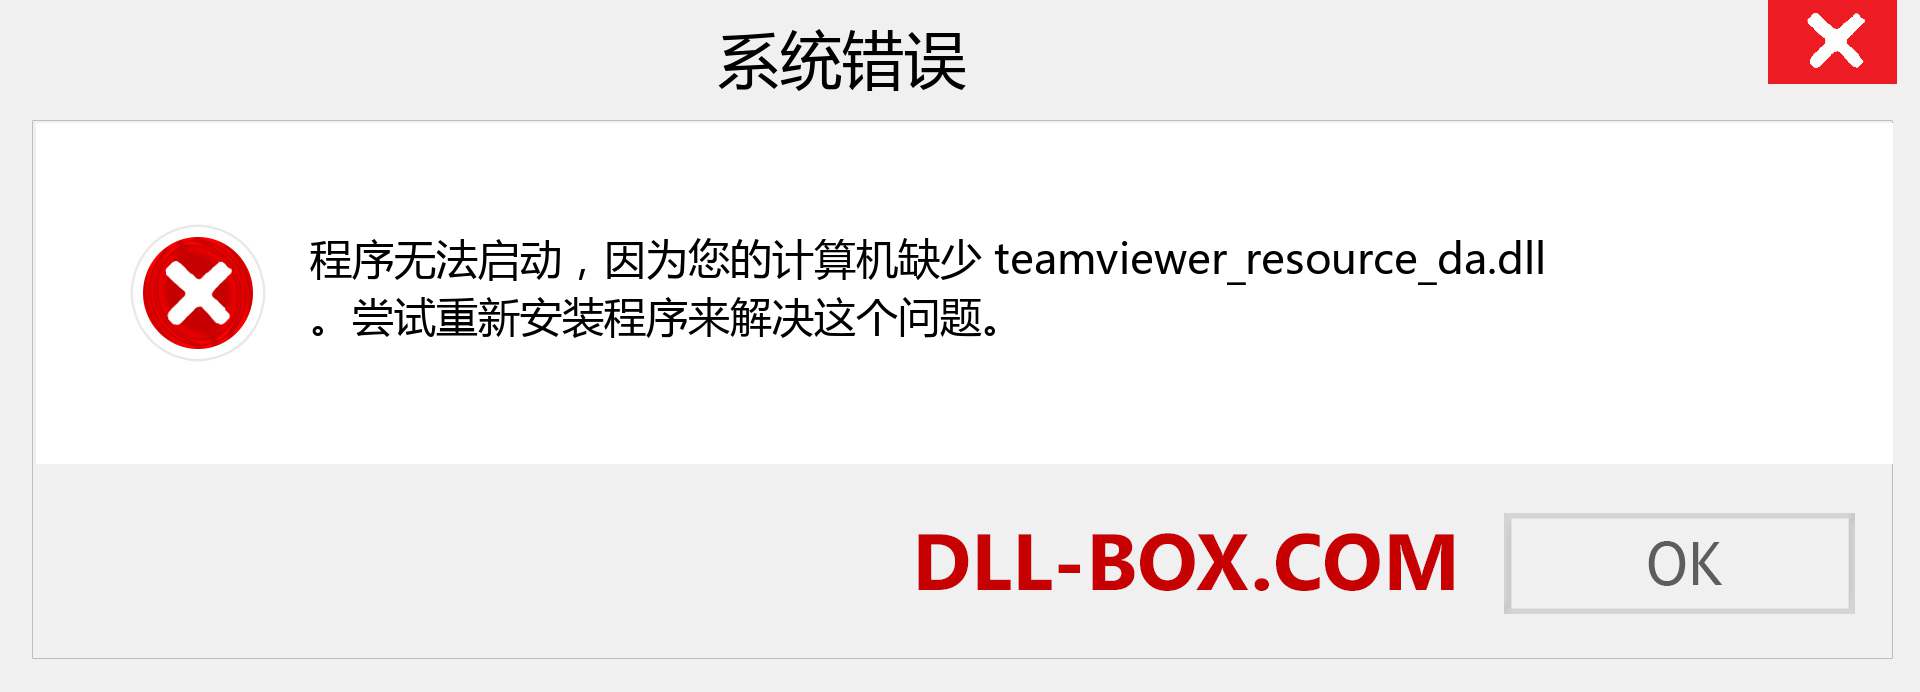 teamviewer_resource_da.dll 文件丢失？。 适用于 Windows 7、8、10 的下载 - 修复 Windows、照片、图像上的 teamviewer_resource_da dll 丢失错误